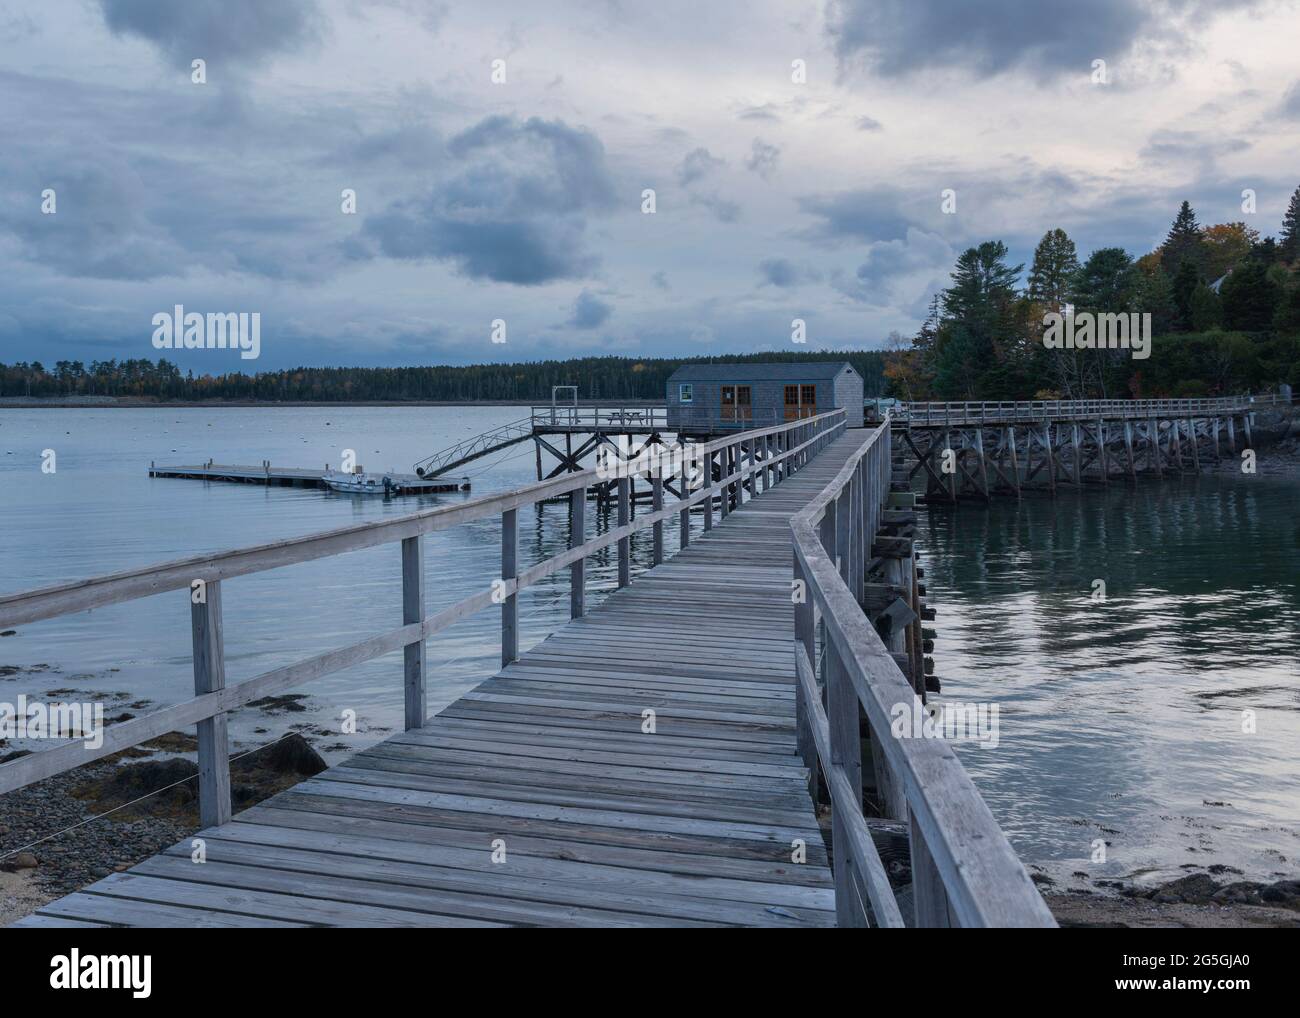 À Northeast Harbour, dans le Maine, une promenade en bois surélevée à Gilpatrick Cove Inlet mène à un Shack et au quai flottant à mi-chemin. Banque D'Images